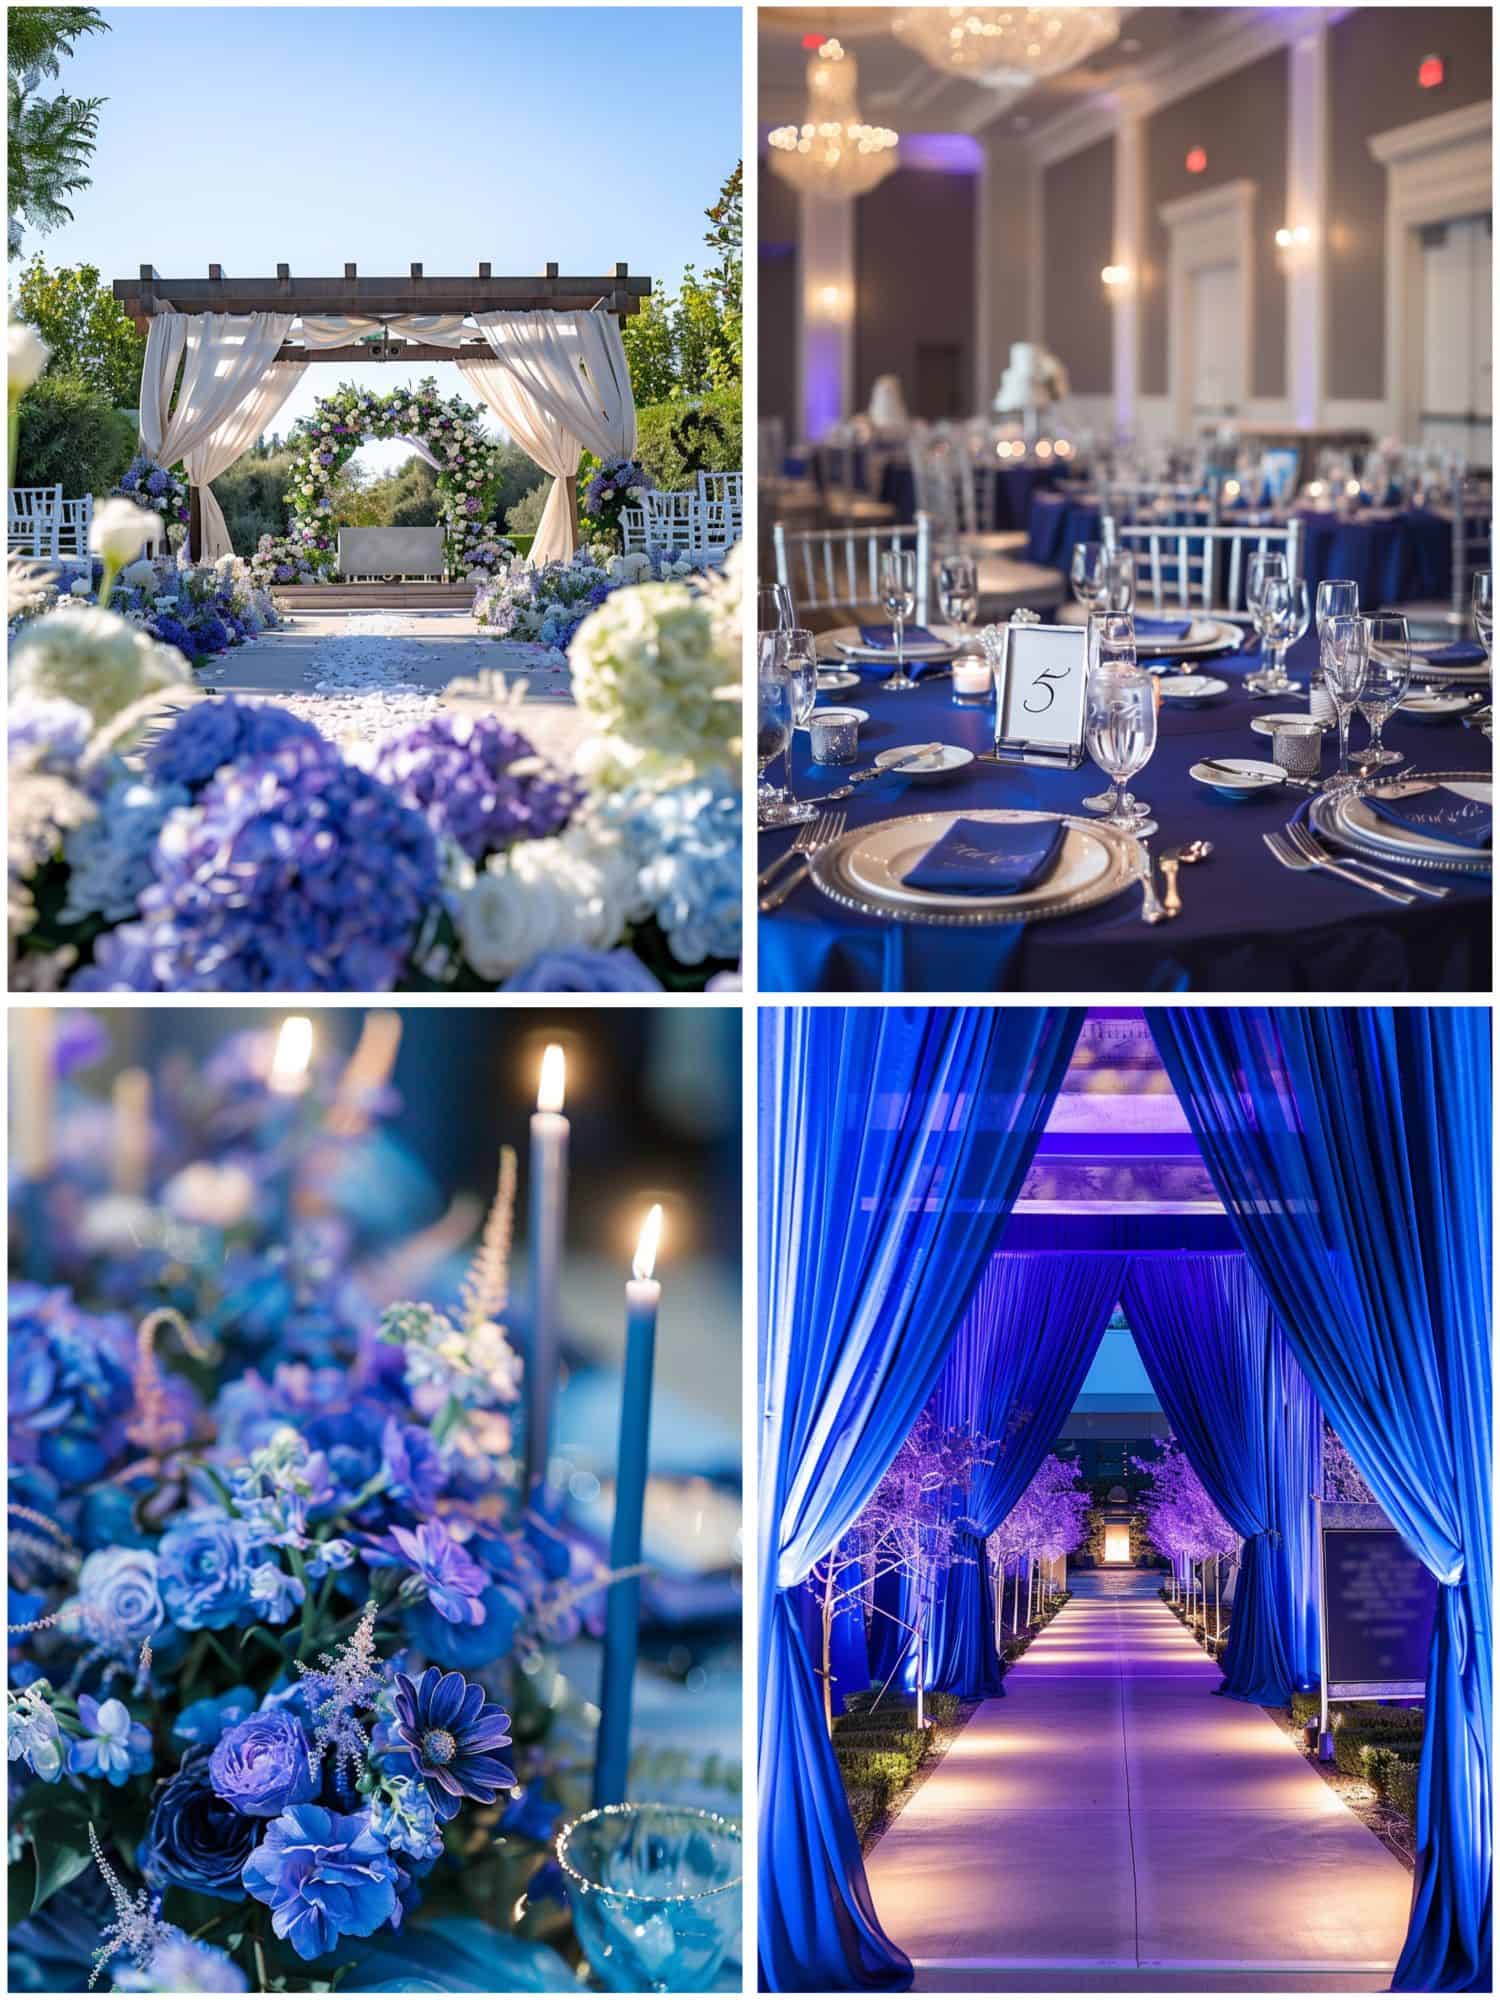 wedding decor in royal blue